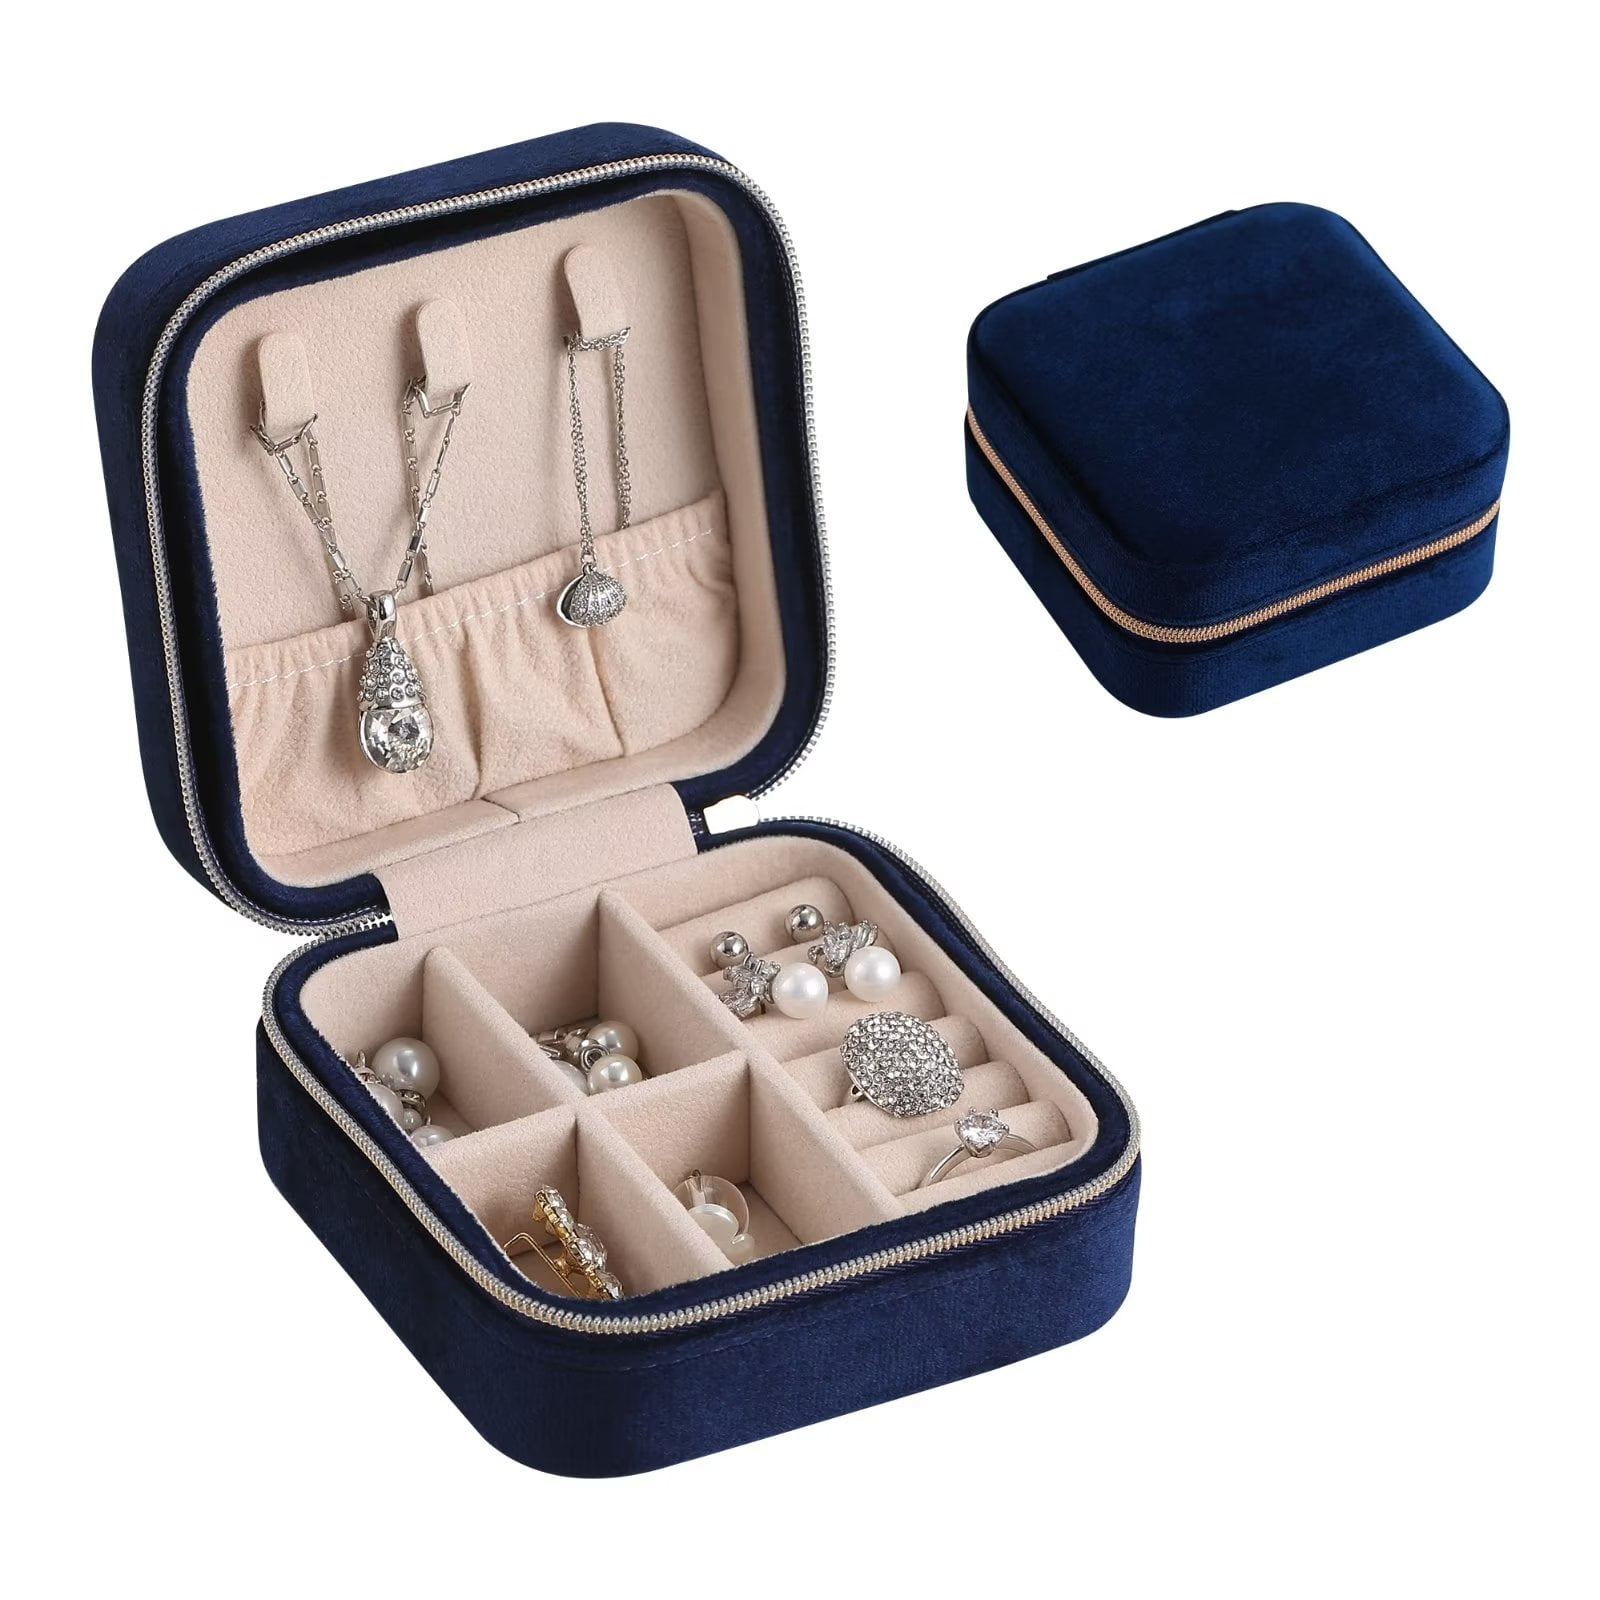 Casegrace Travel Portable Jewelry Box for Women Girl Velvet Jewellery ...